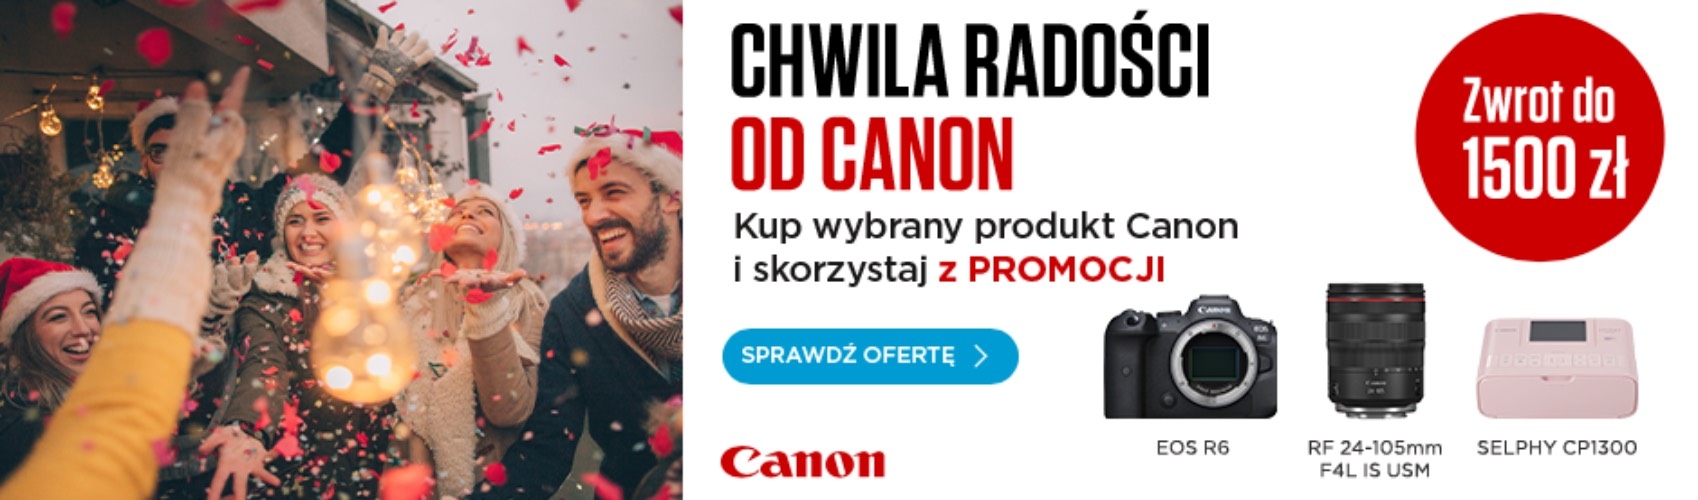 Poczuj chwile radości od Canon i zyskaj do 1500 zł w cashbacku